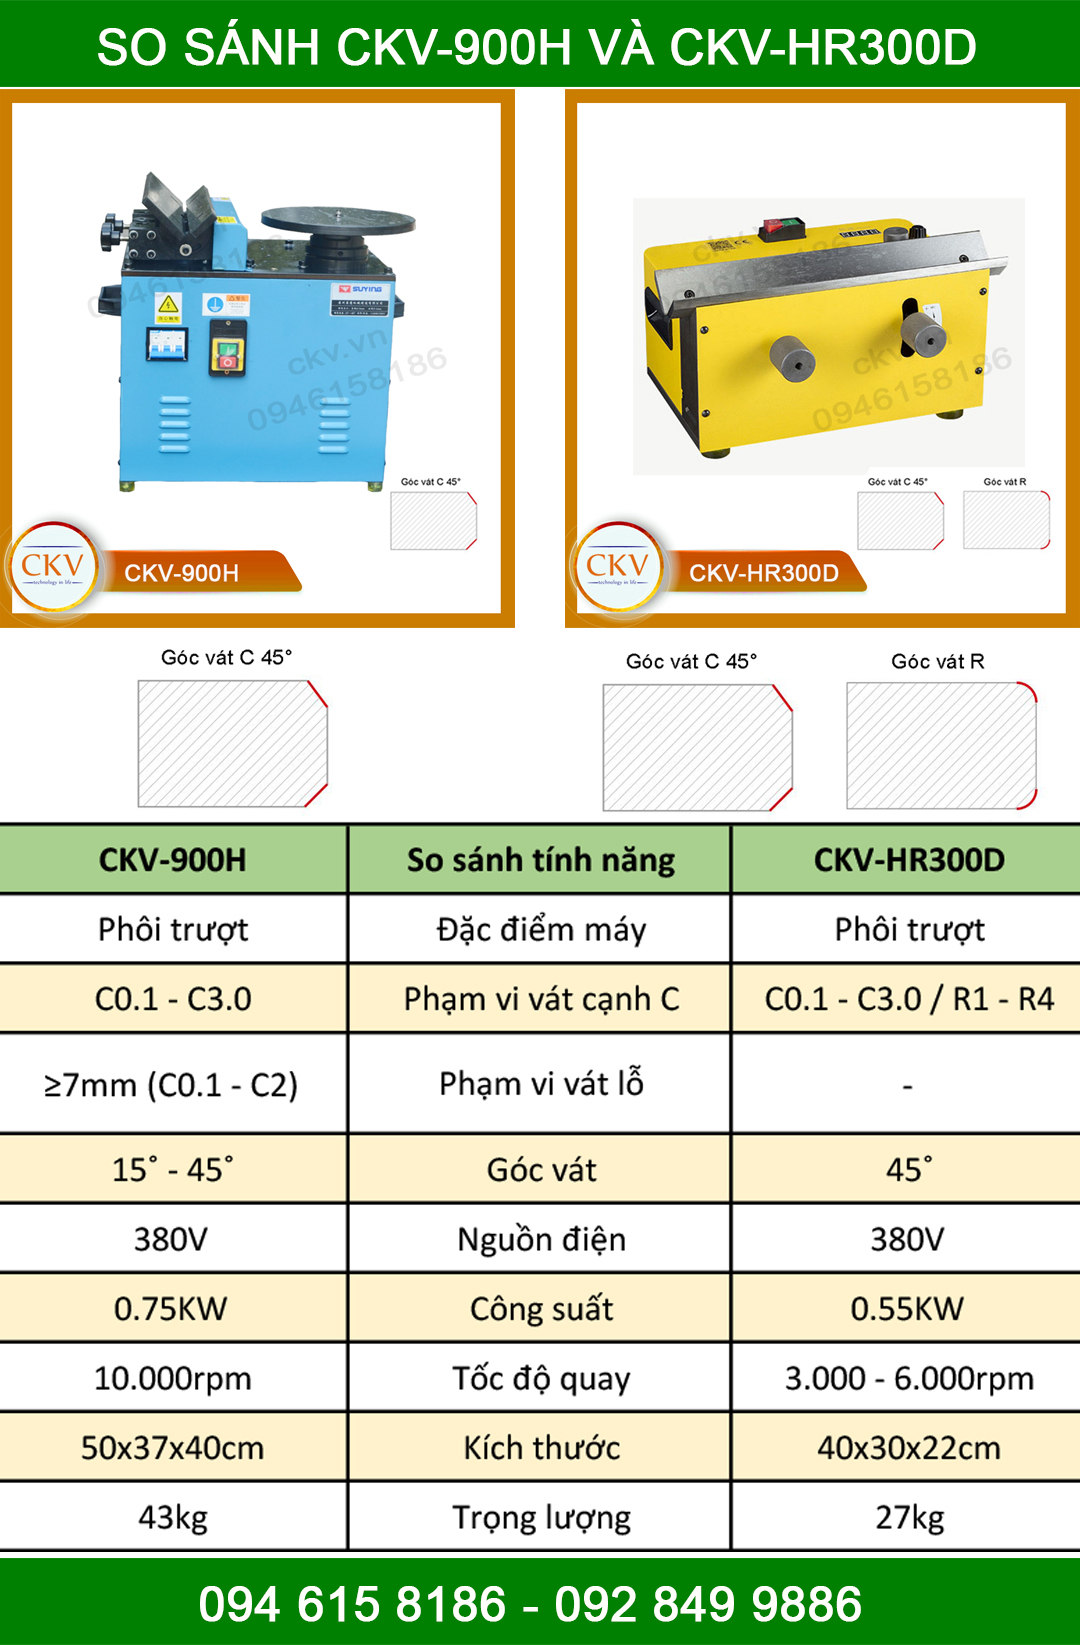 So sánh CKV-900H và CKV-HR300D